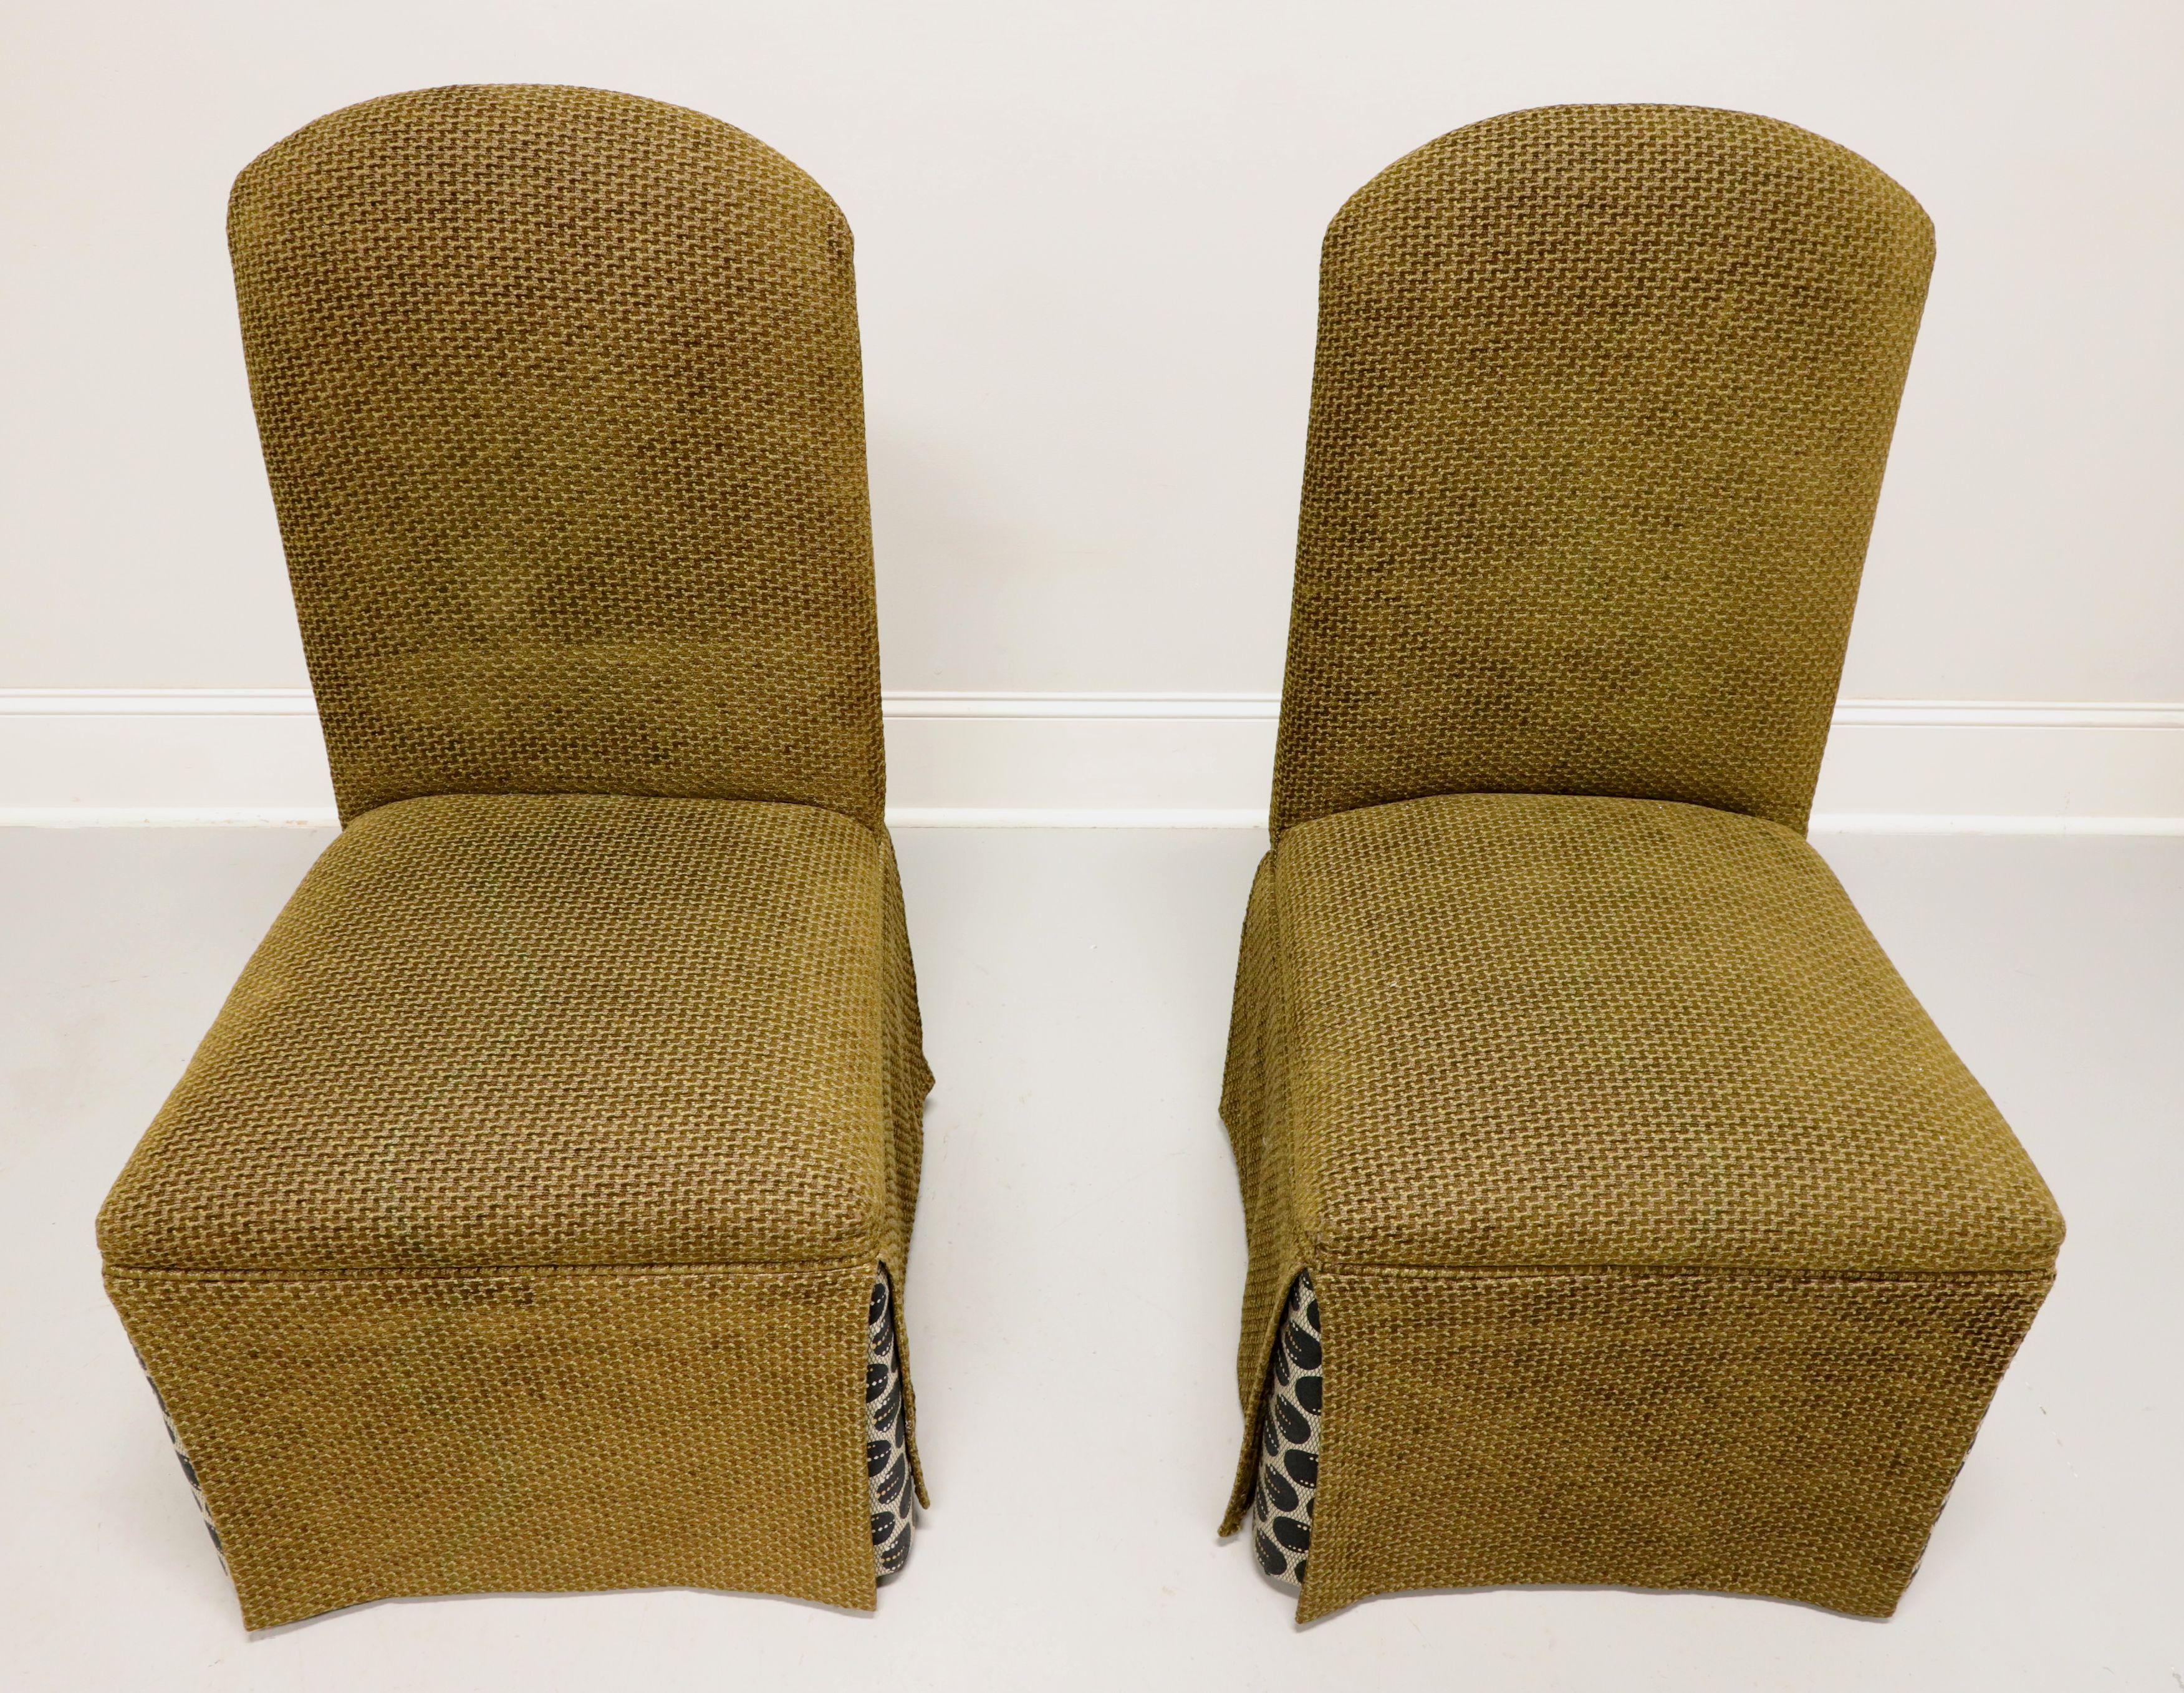 Une paire de chaises Parsons de style transitionnel, sans marque, de qualité similaire à Lane s. Cadre en bois massif, revêtement en tissu tweed vert olive, jupe complète avec jupes d'angle dans un motif circulaire noir, beige et marron. Fabriqué